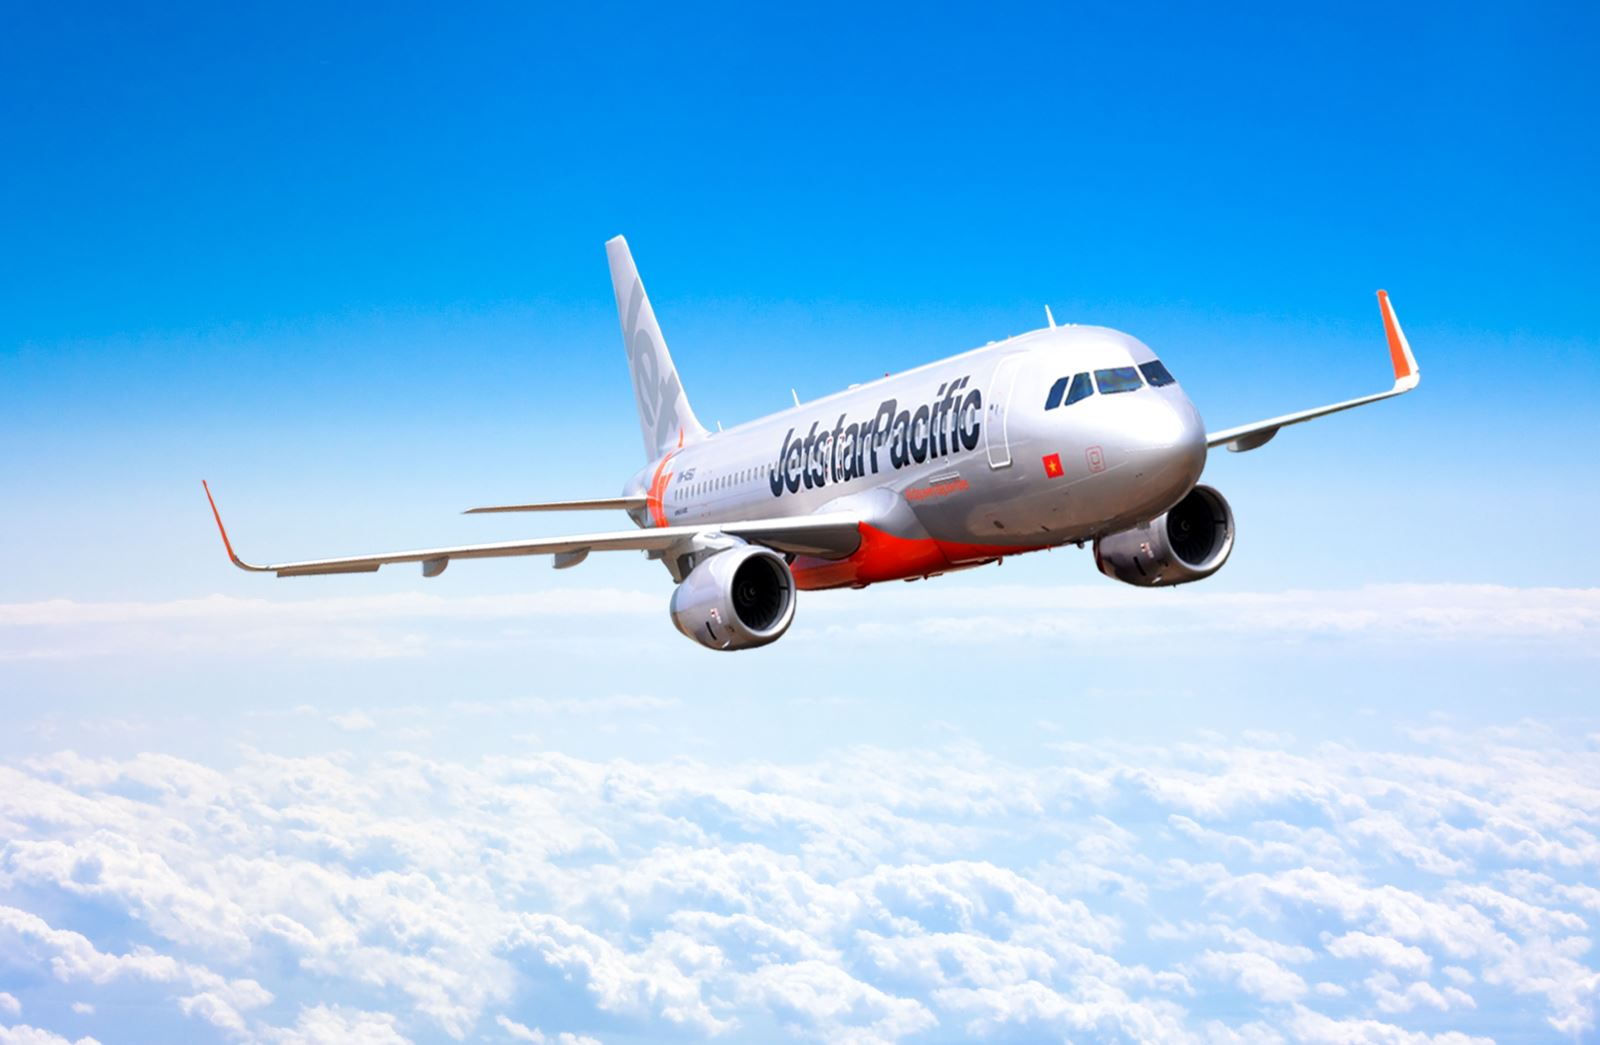 Jetstar Pacific tặng hành lý ký gửi miễn cước cho khách đi máy bay |  baotintuc.vn